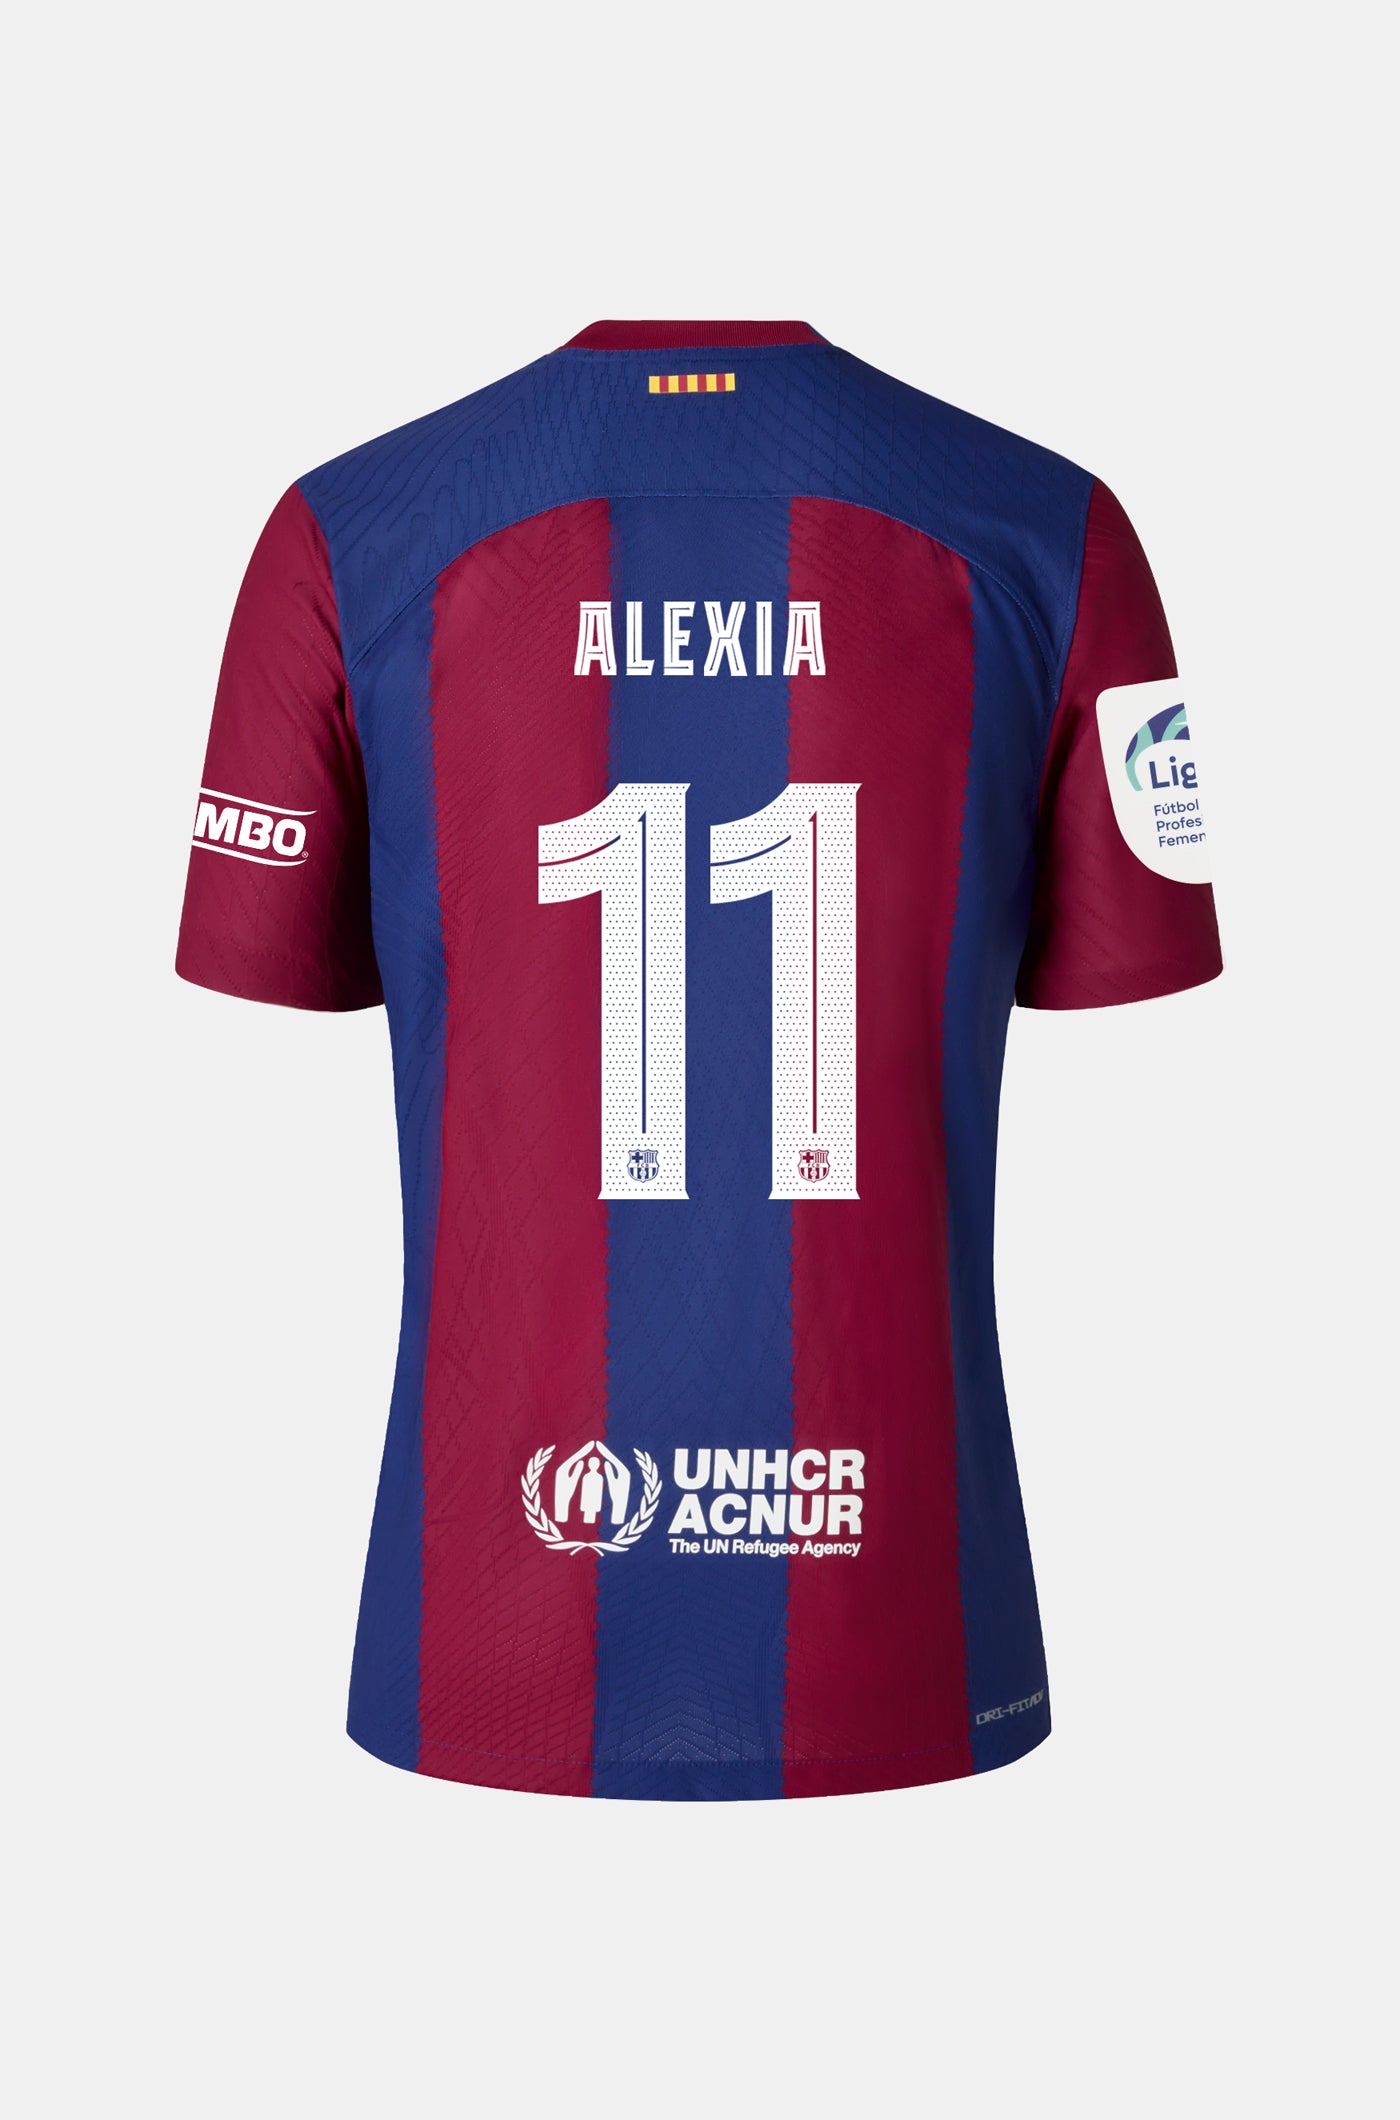 Liga F FC Barcelona home shirt 23/24 Player's Edition - ALEXIA